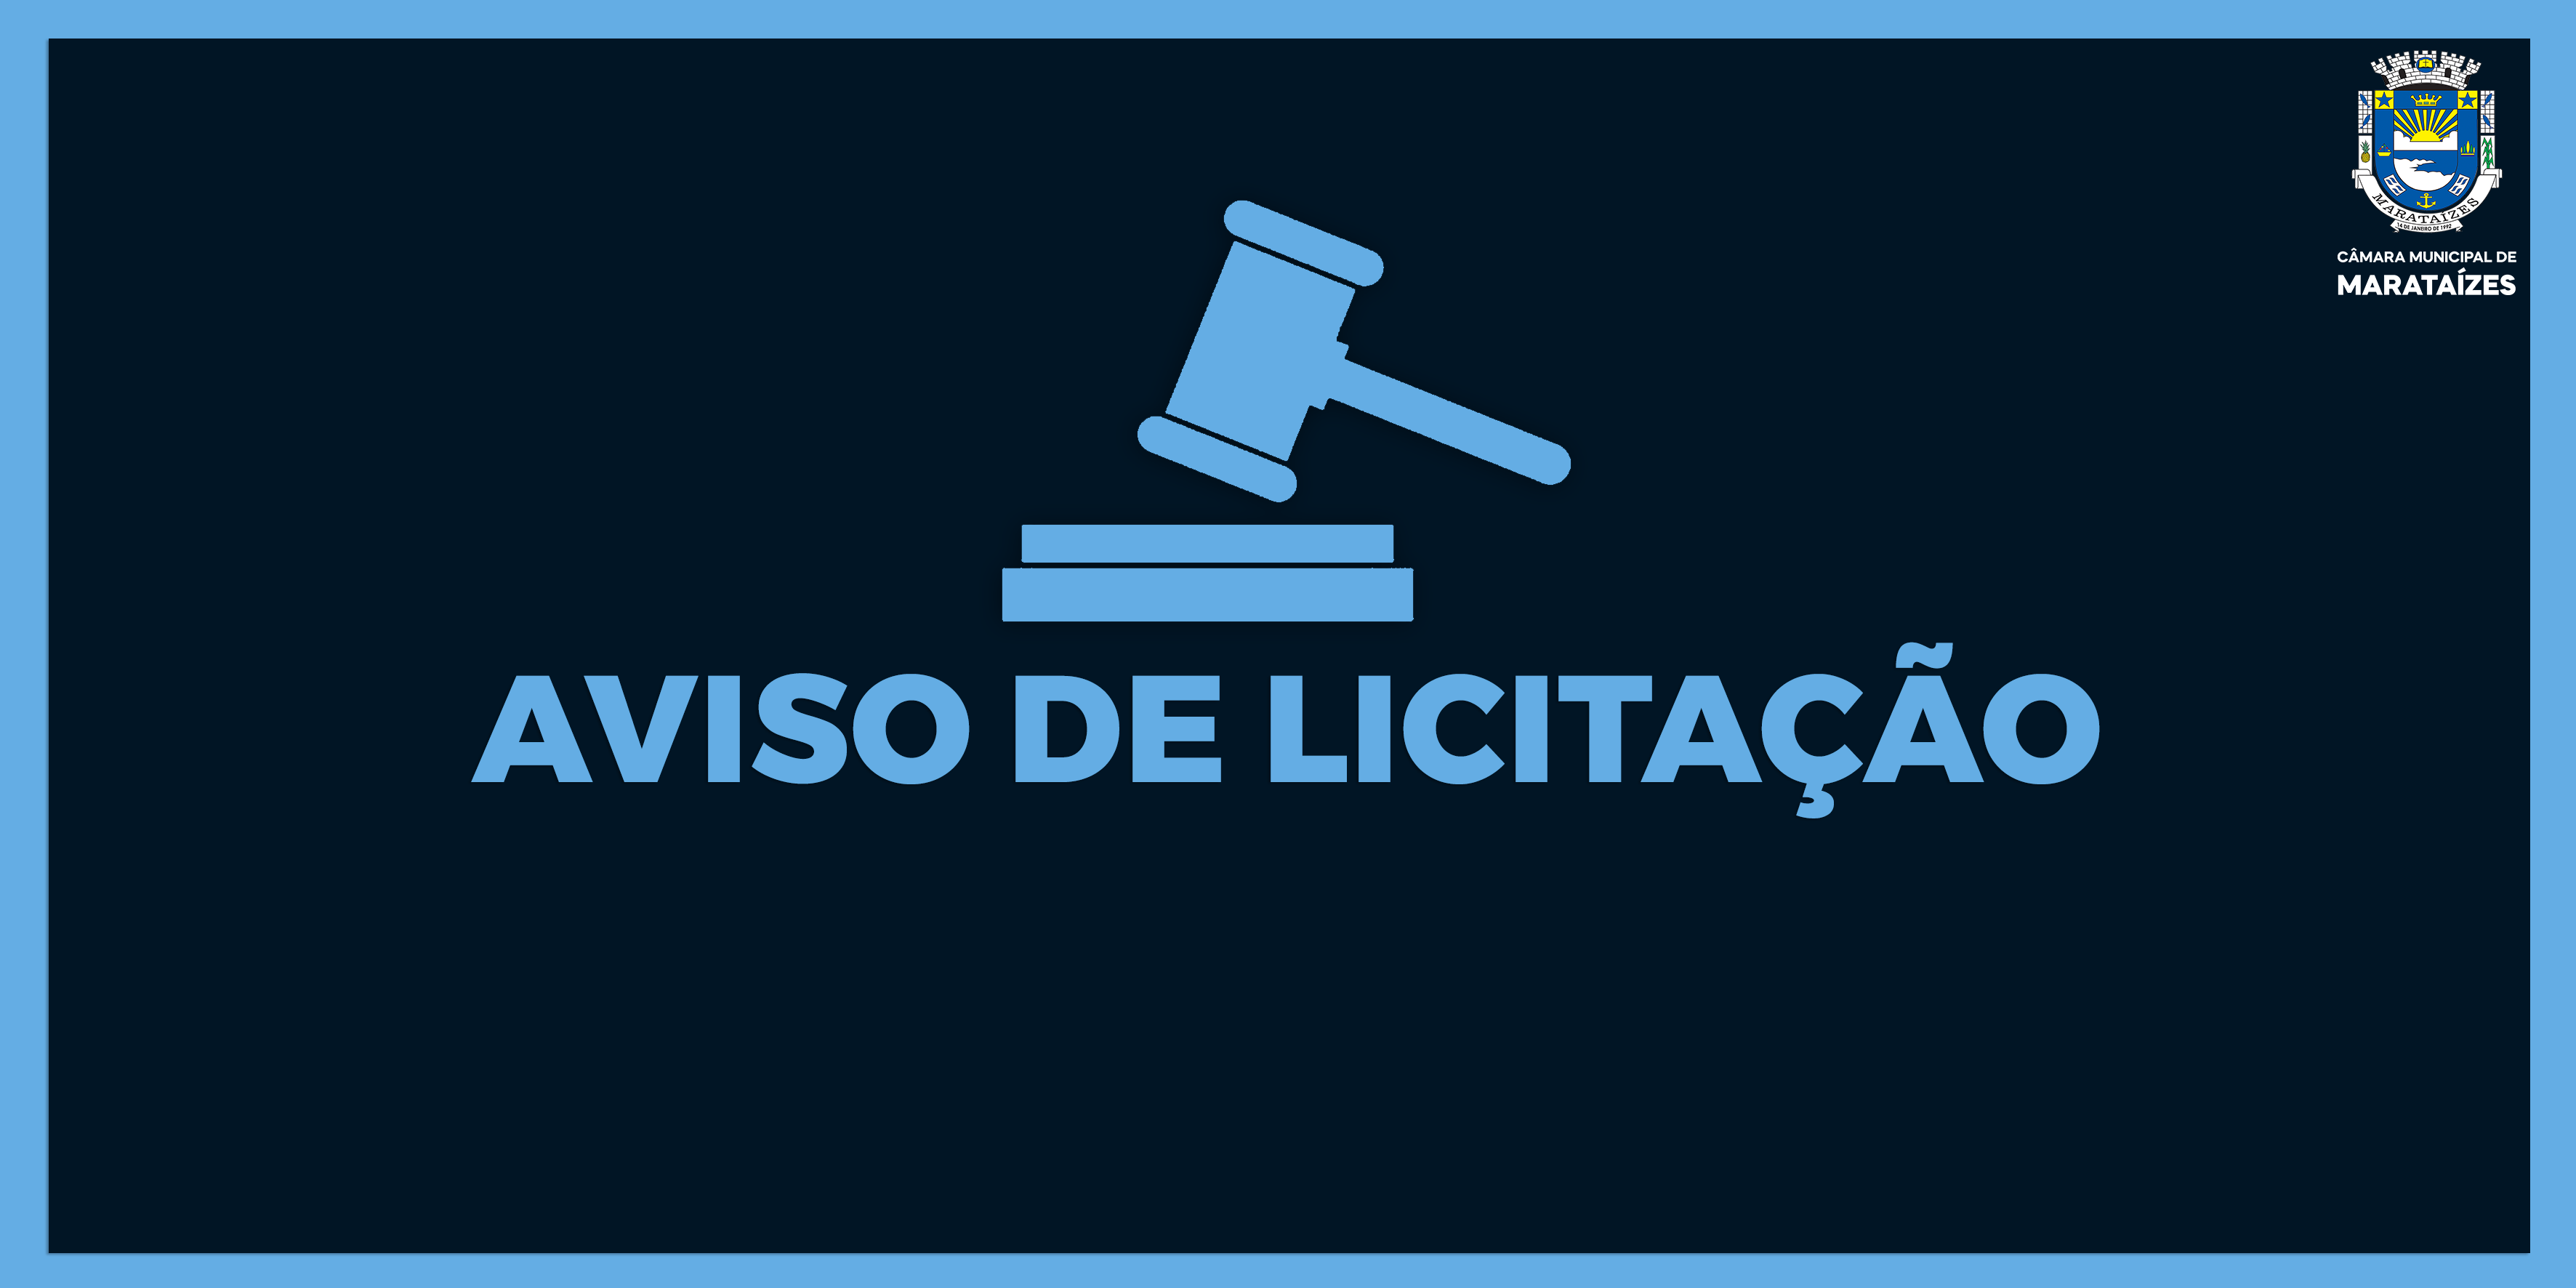 NOTÍCIA: AVISO DE LICITAÇÃO - PREGÃO PRESENCIAL Nº 03/2022